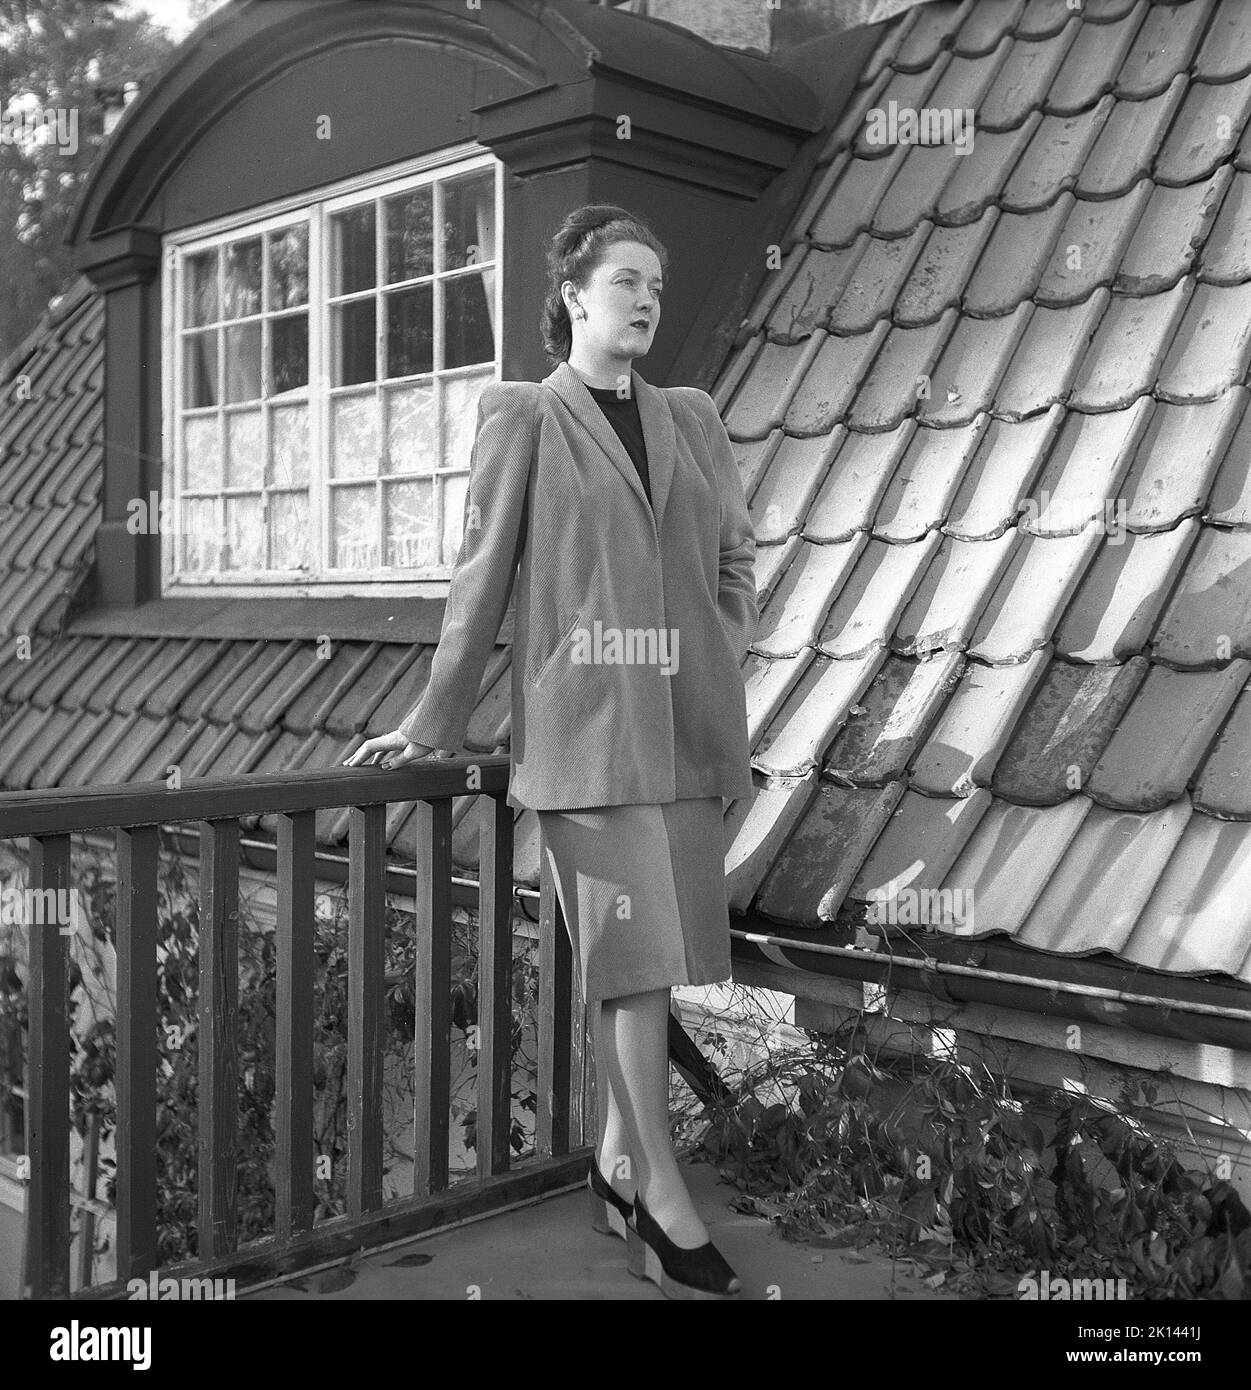 Damenmode im Jahr 1940s. Eine junge Frau, die für ein Damenmagazin fotografiert wurde, um die Damenmode von 1945 zu zeigen. Das weibliche Modell trägt eine passende Jacke und einen passenden Rock. Schweden 1945. Kristoffersson Ref. R6-4 Stockfoto